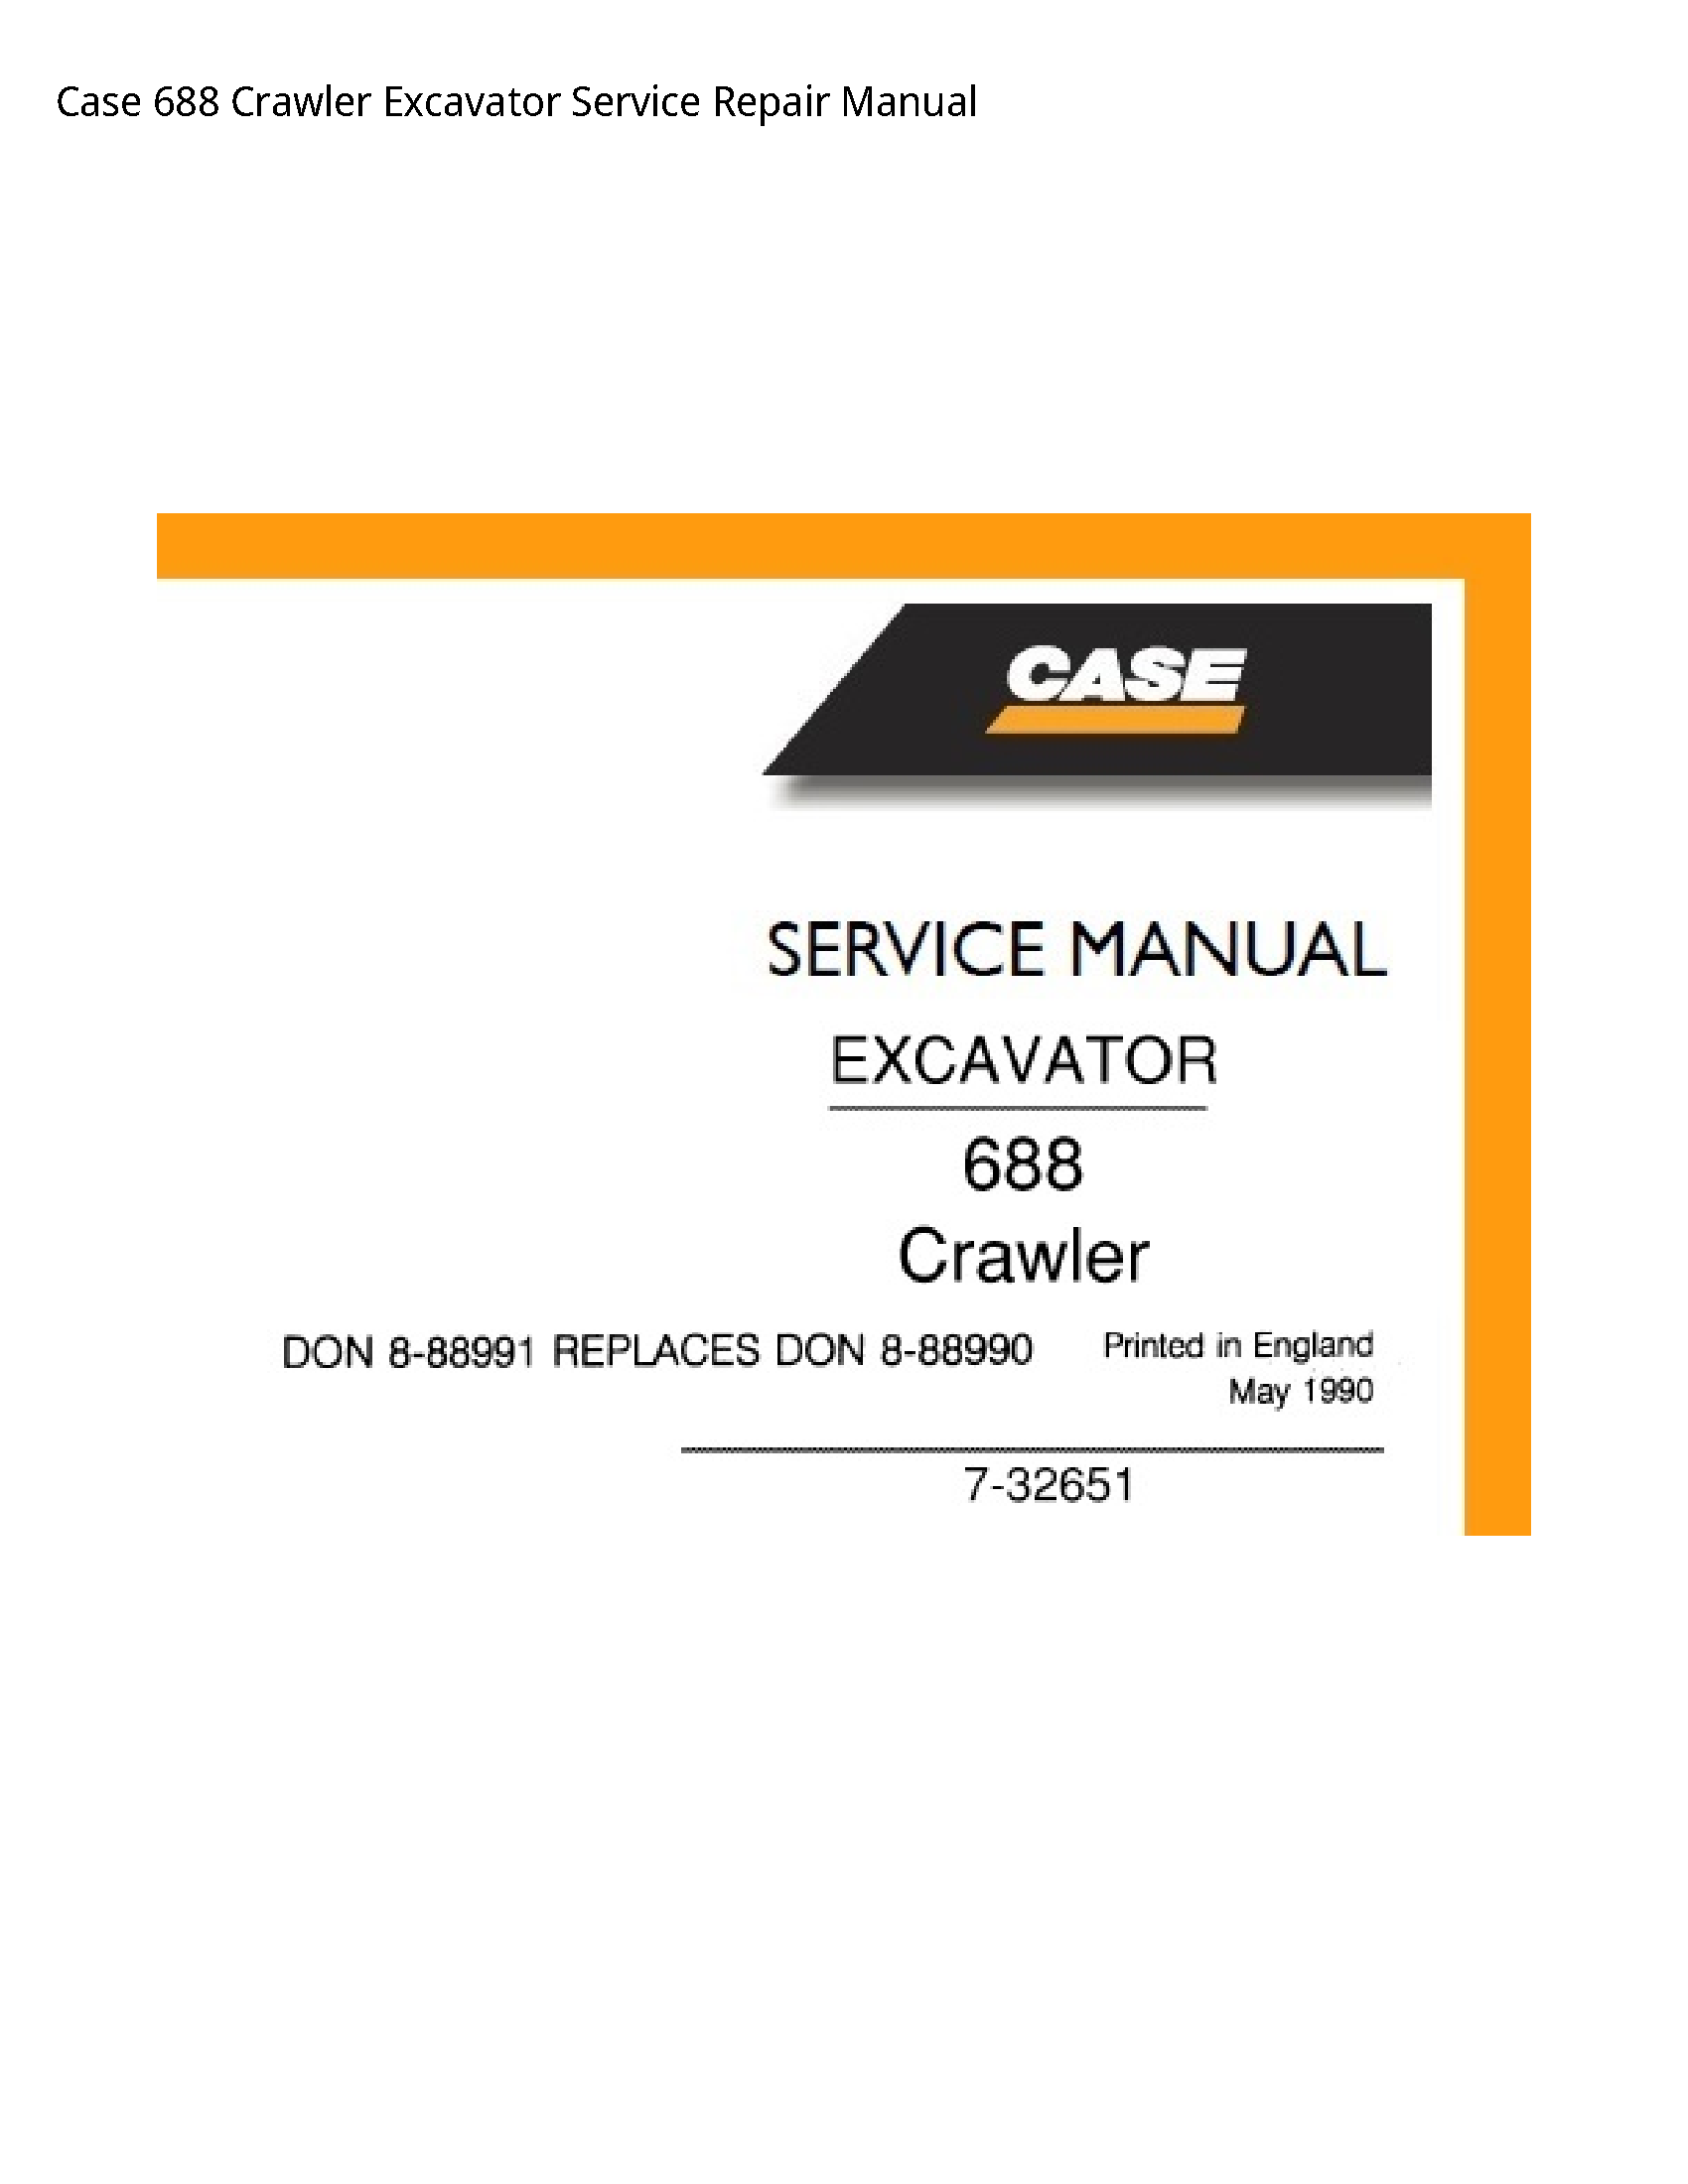 Case/Case IH 688 Crawler Excavator manual